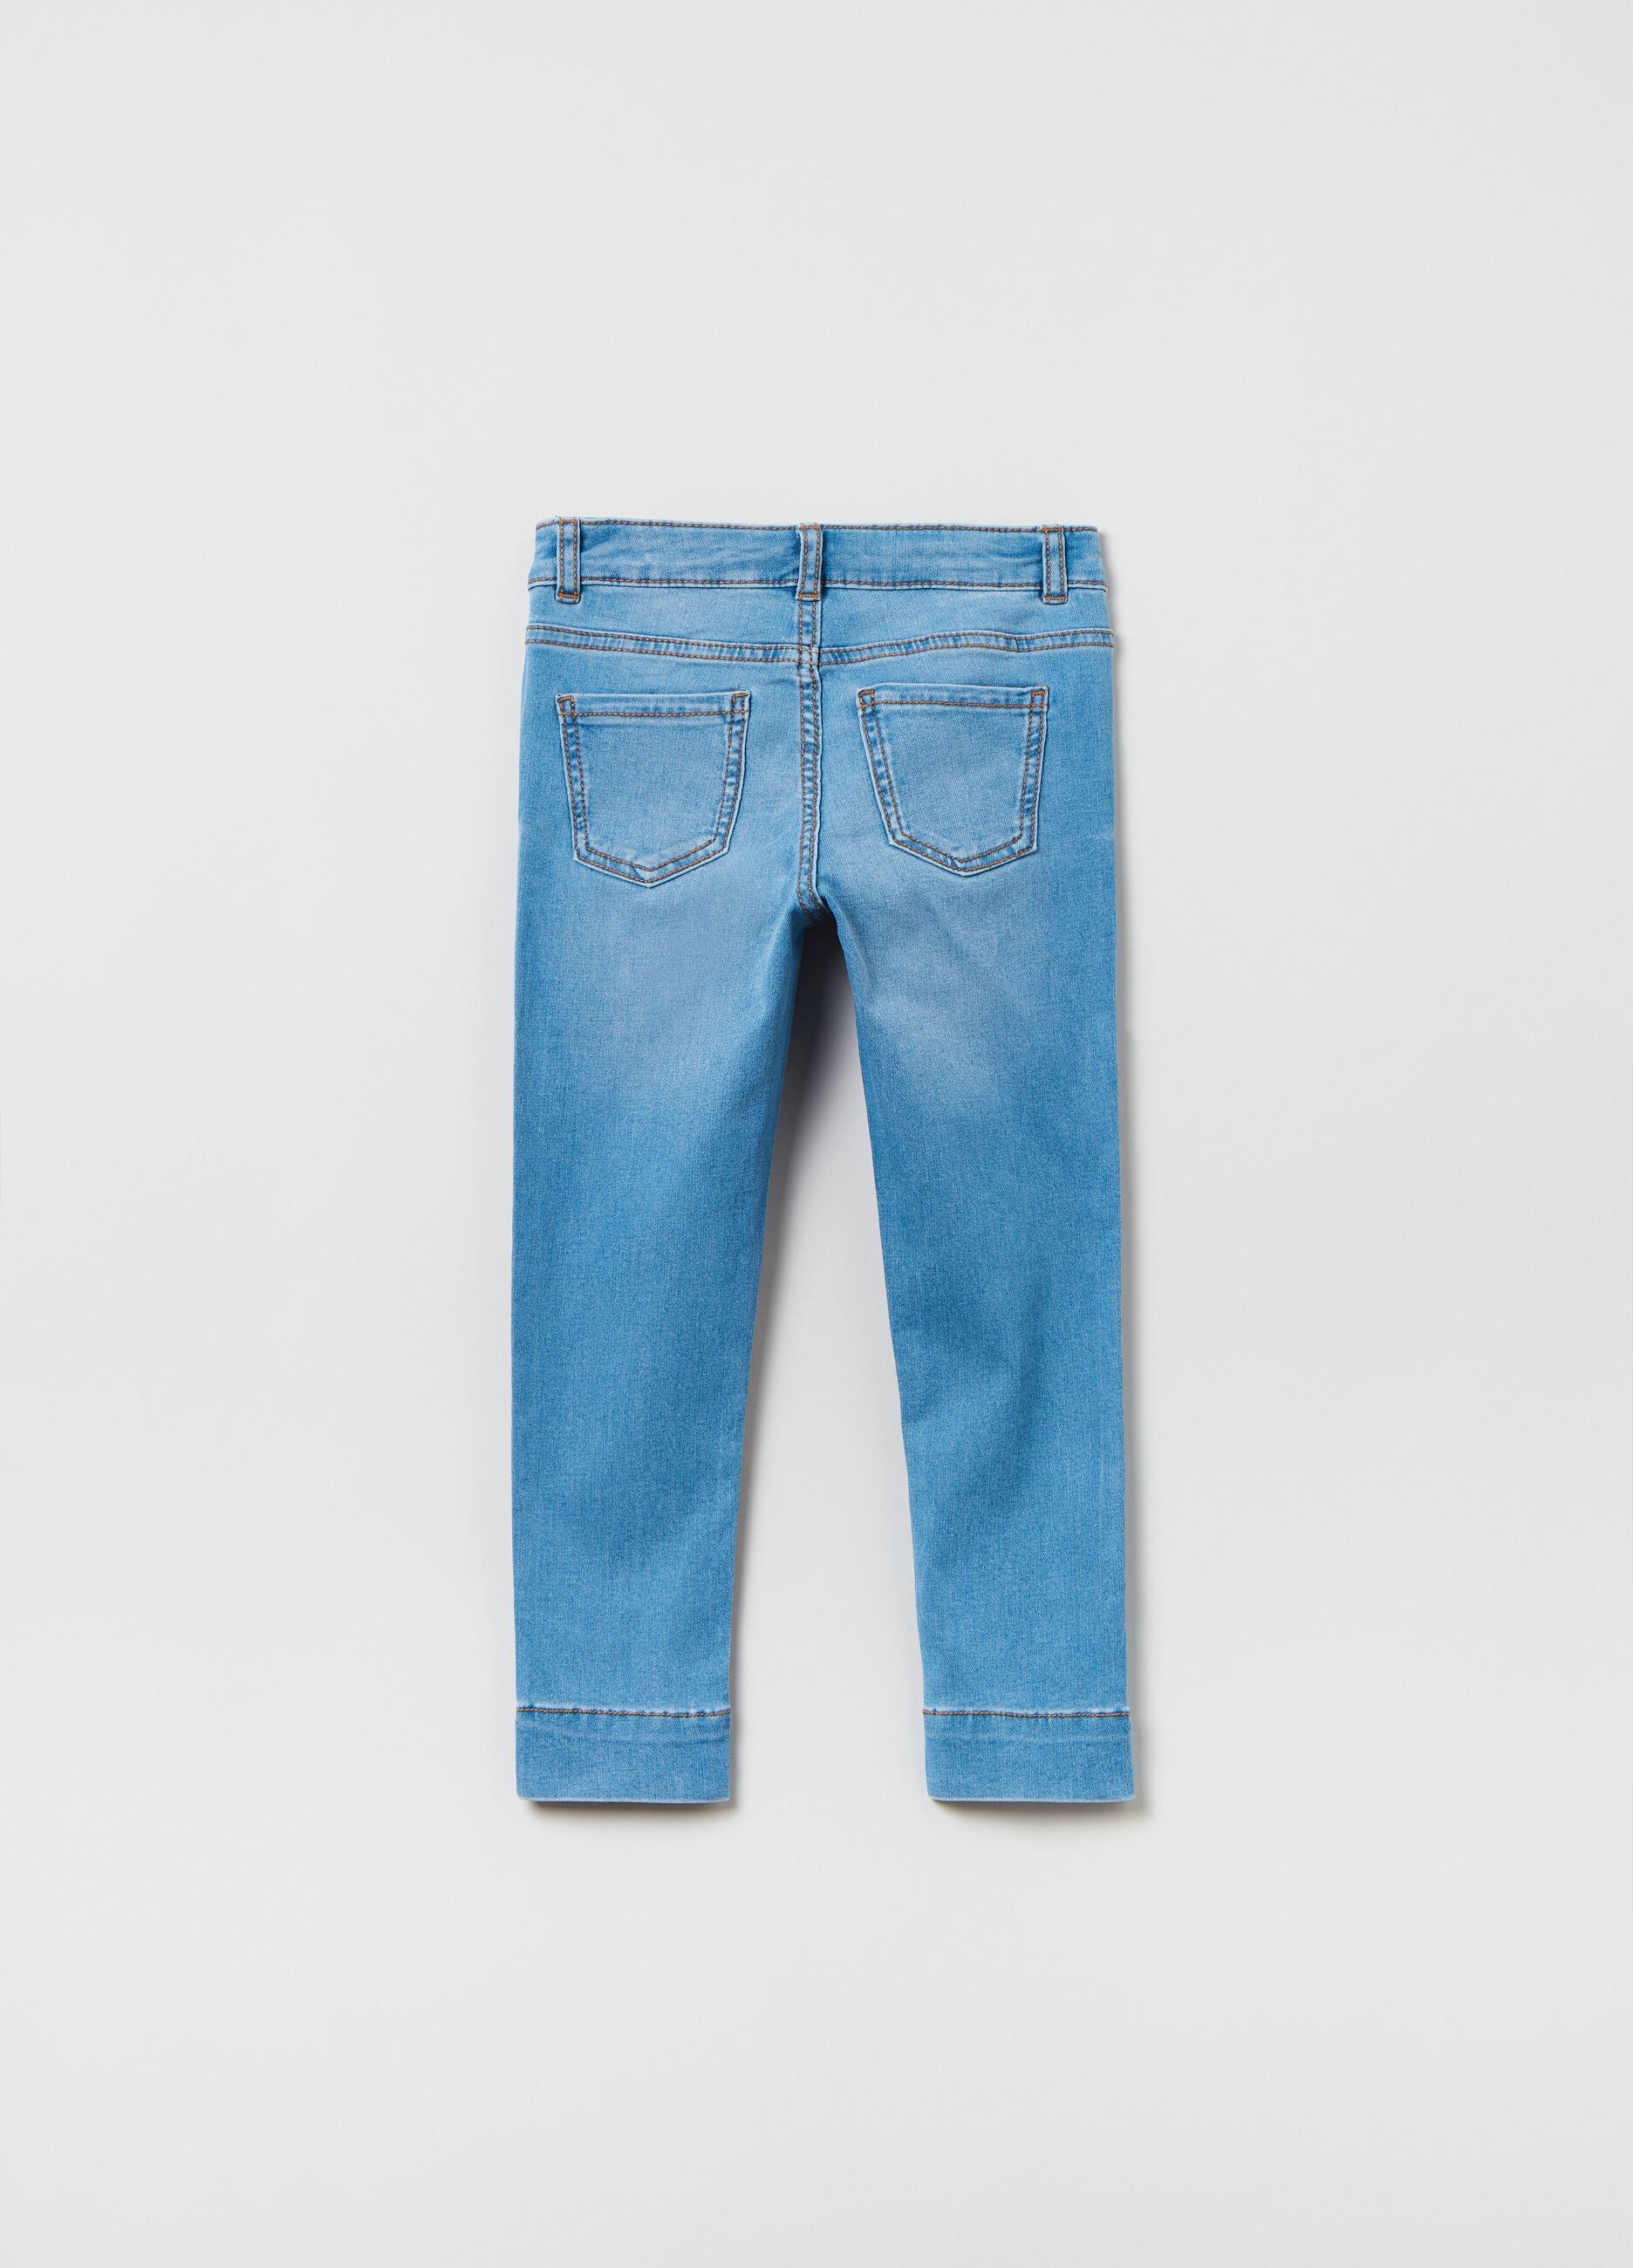 Five-pocket, skinny-fit jeans